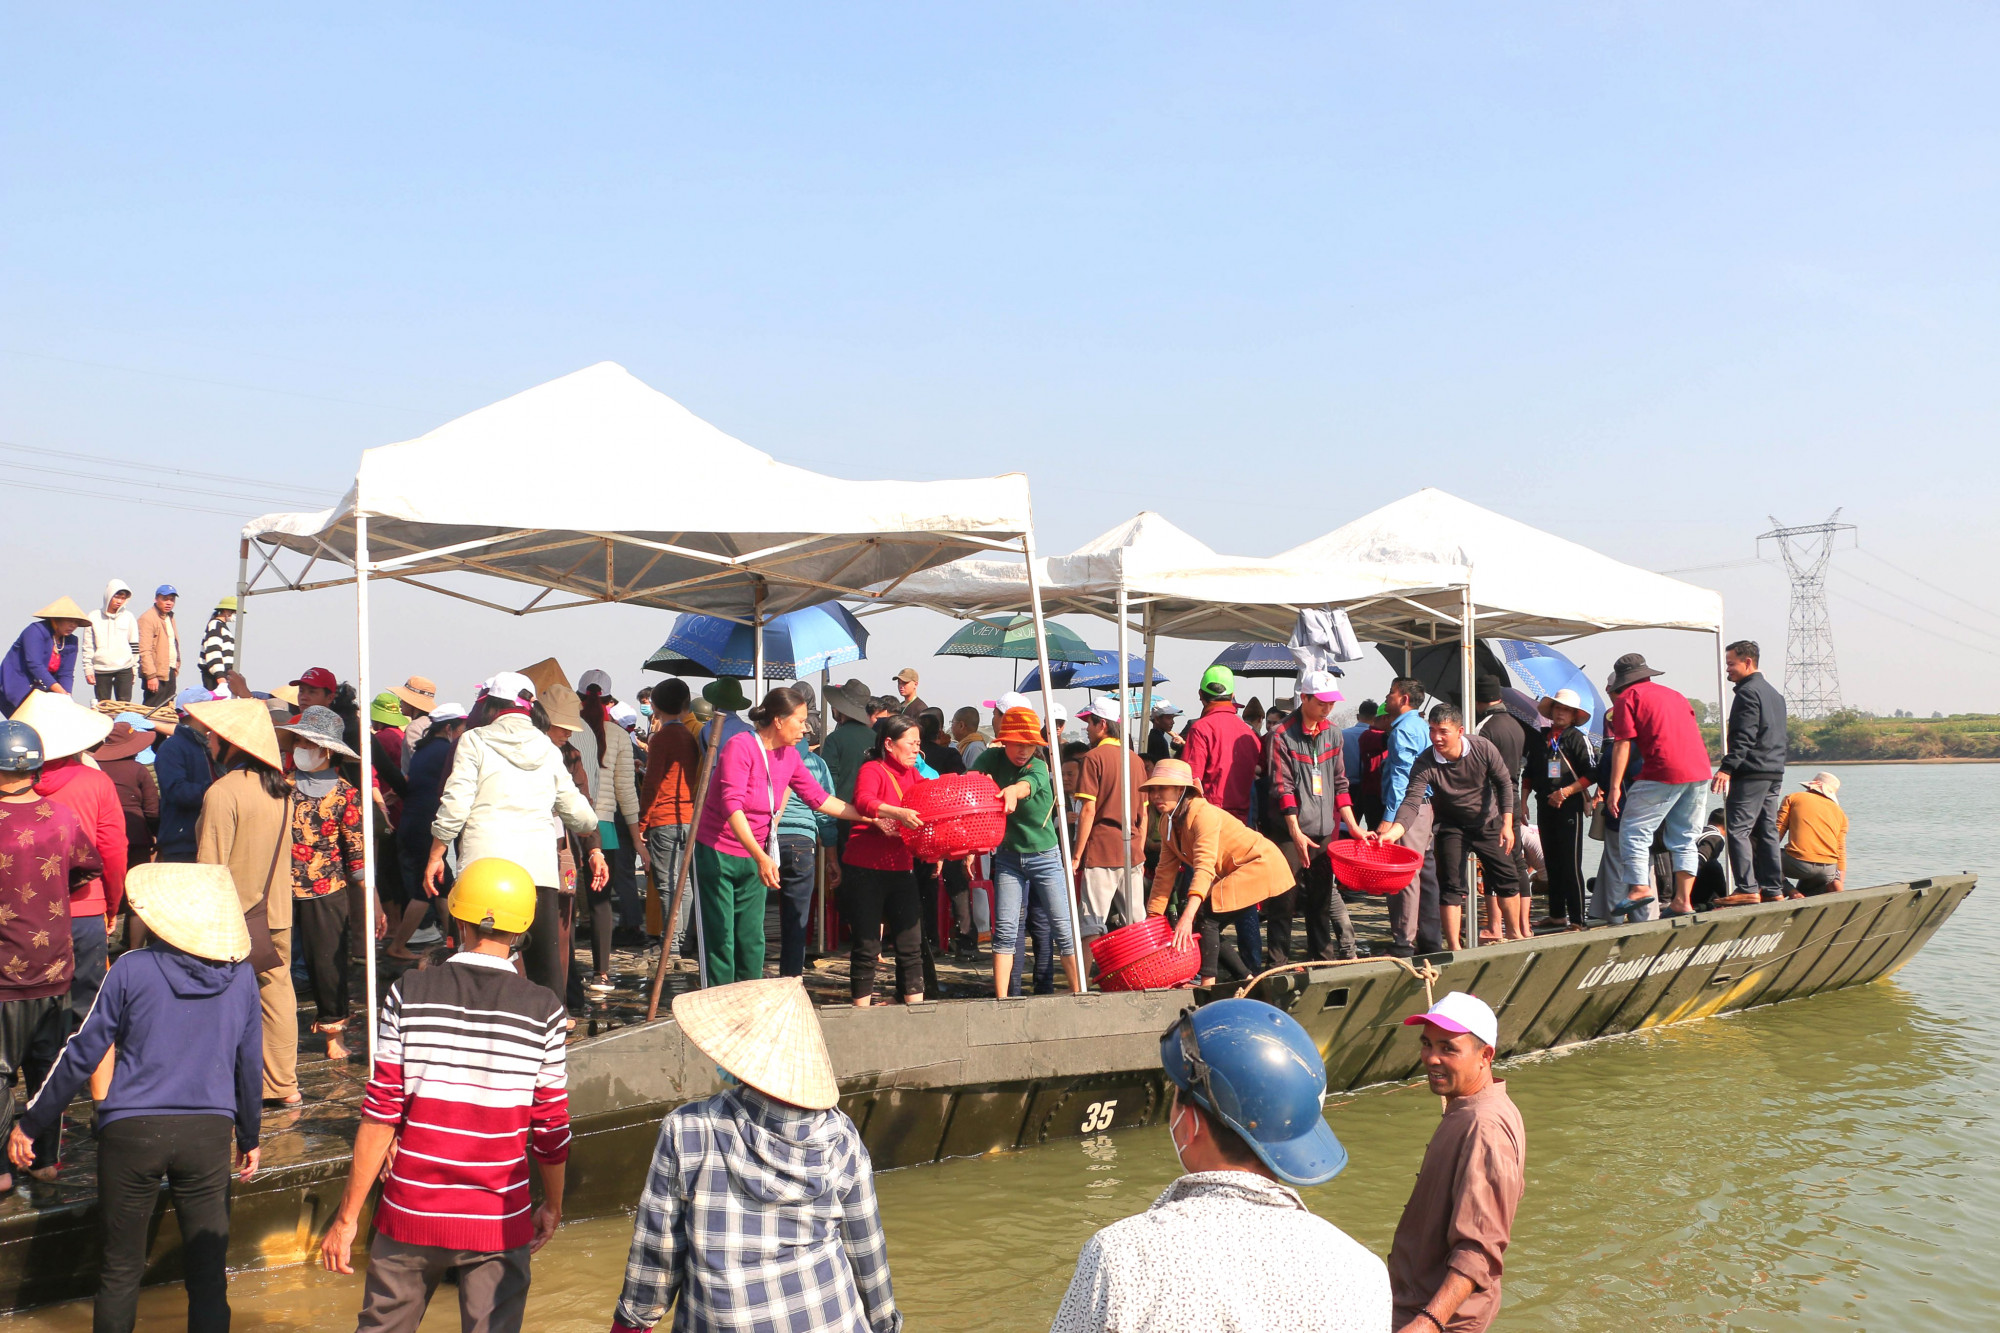 Lữ Đoàn Công binh 414 (Quân khu 4) điều động phương tiện, kết thành đường nổi trên sông để việc thả cá xuống sông Lam được thuận tiện hơn.